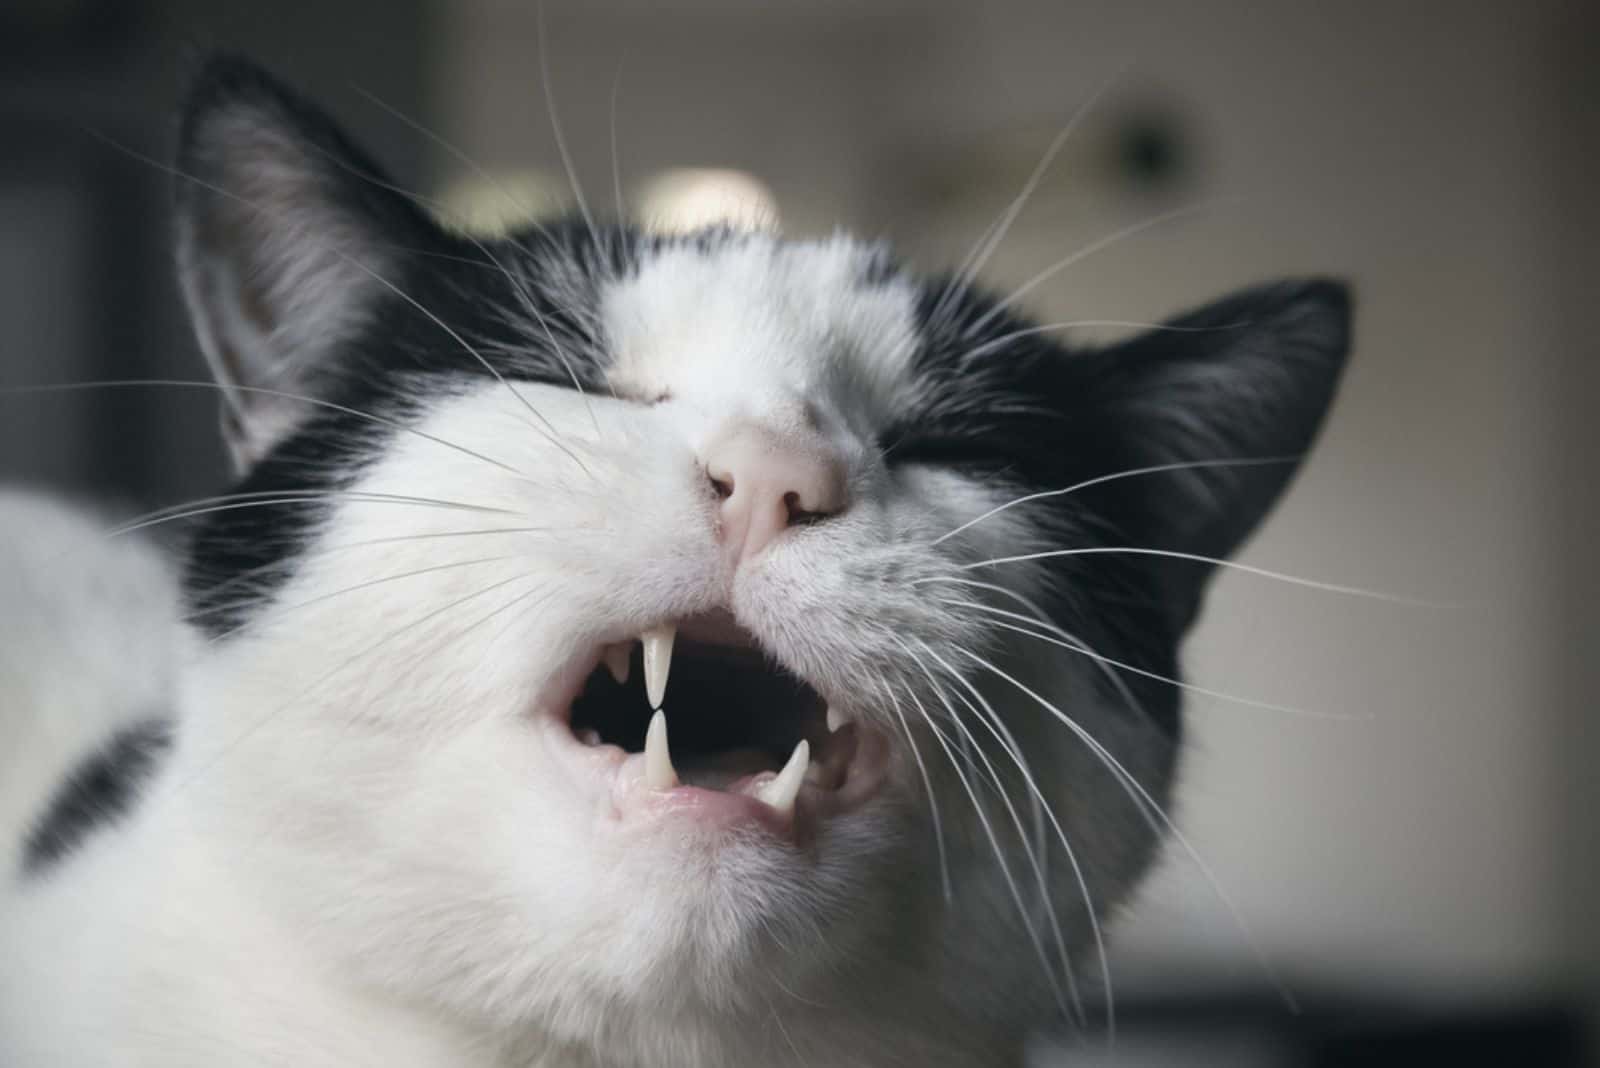 zwart-witte kat grimassen met open mond